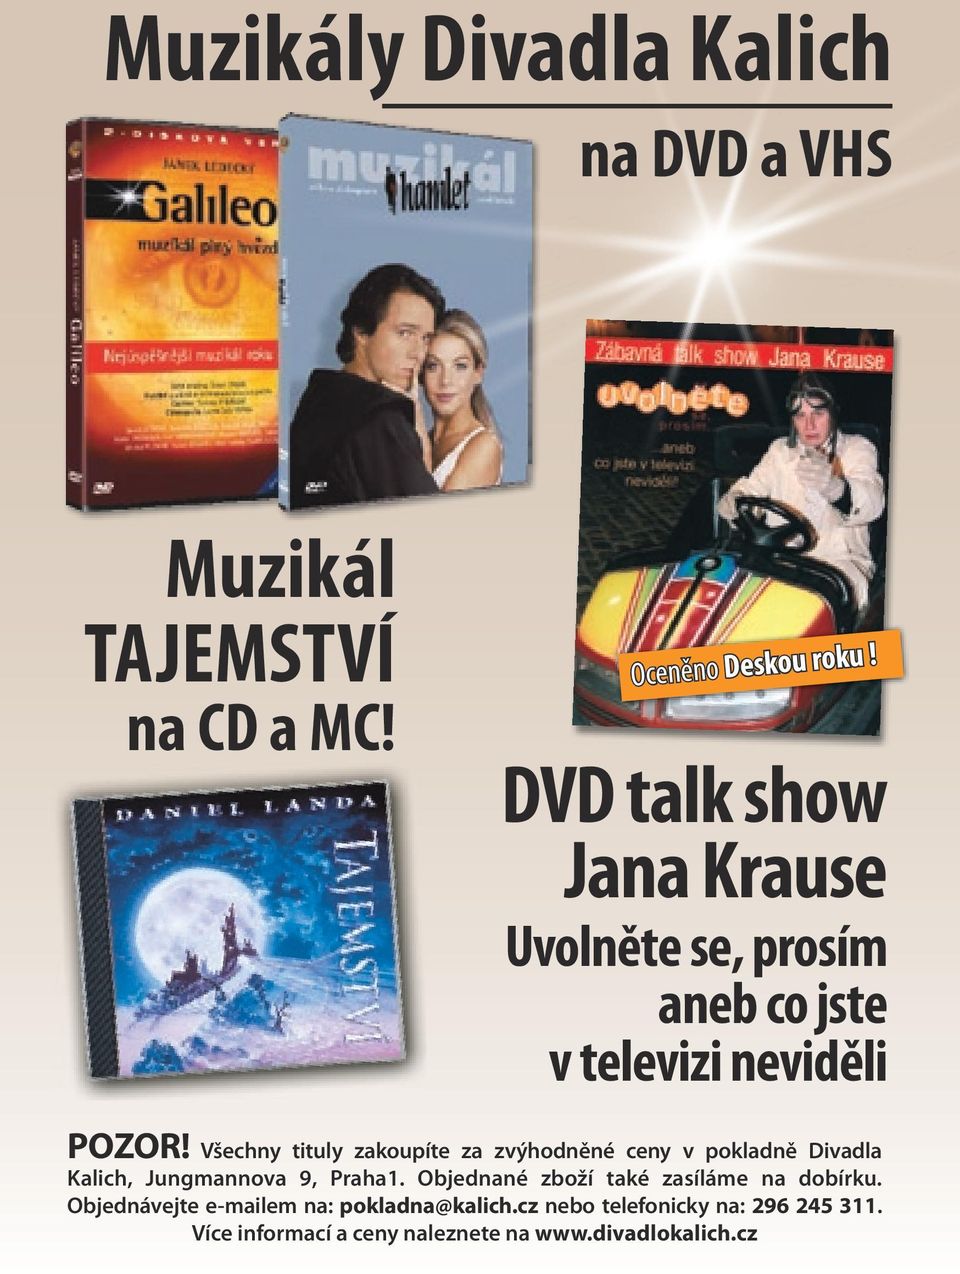 Všechny tituly zakoupíte za zvýhodněné ceny v pokladně Divadla Kalich, Jungmannova 9, Praha1.